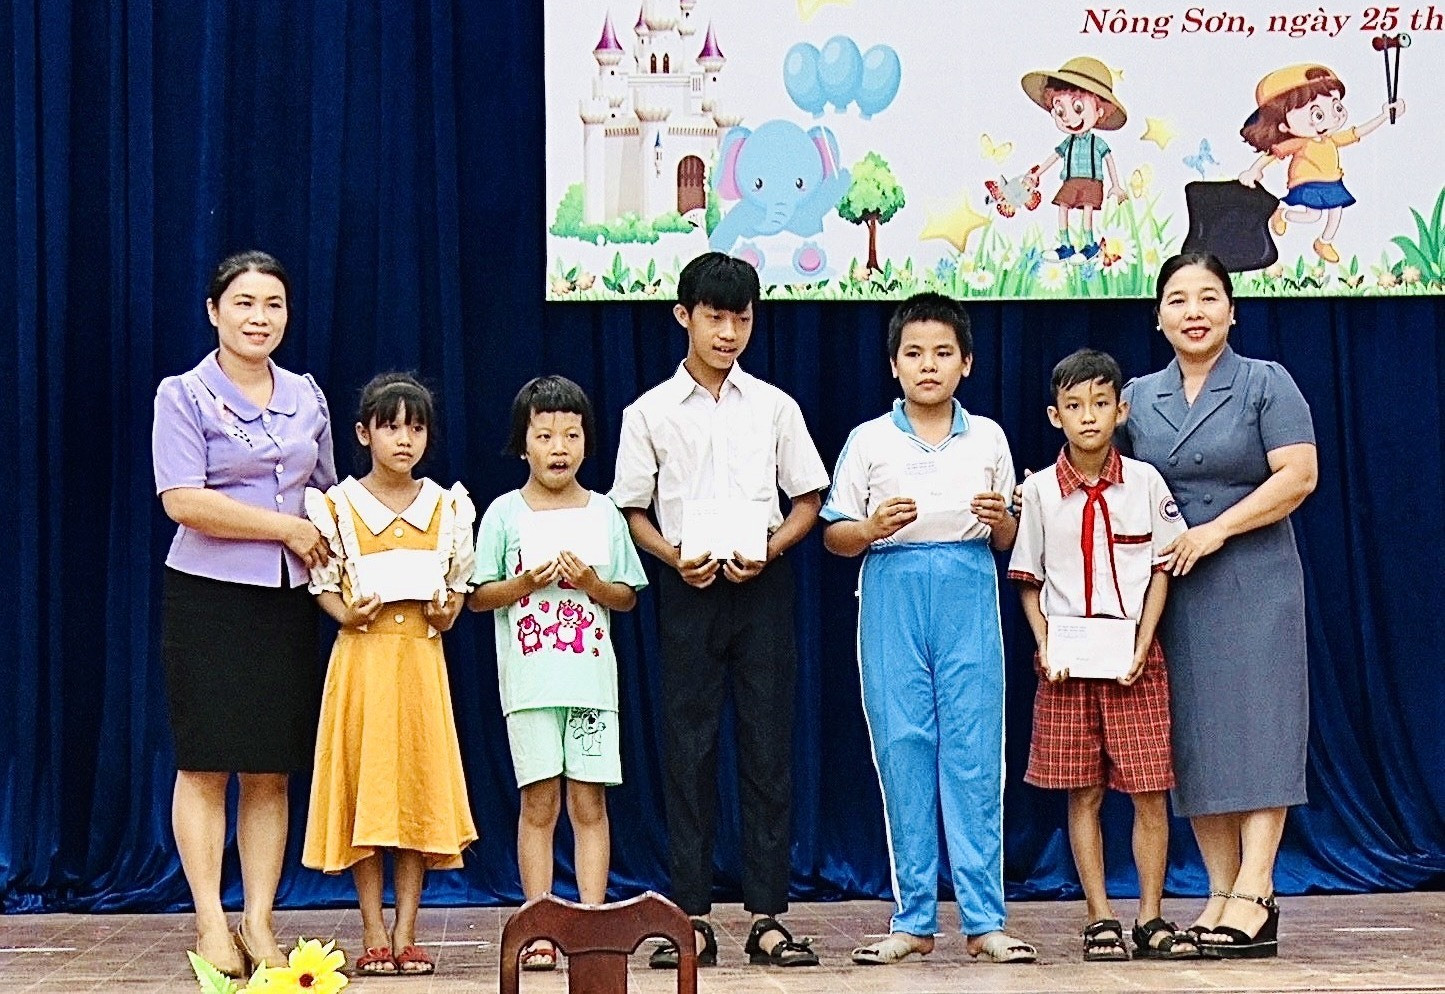 Lãnh đạo huyện Nông Sơn tặng quà cho trẻ em có hoàn cảnh đặc biệt khó khăn. Ảnh: MINH TÂM